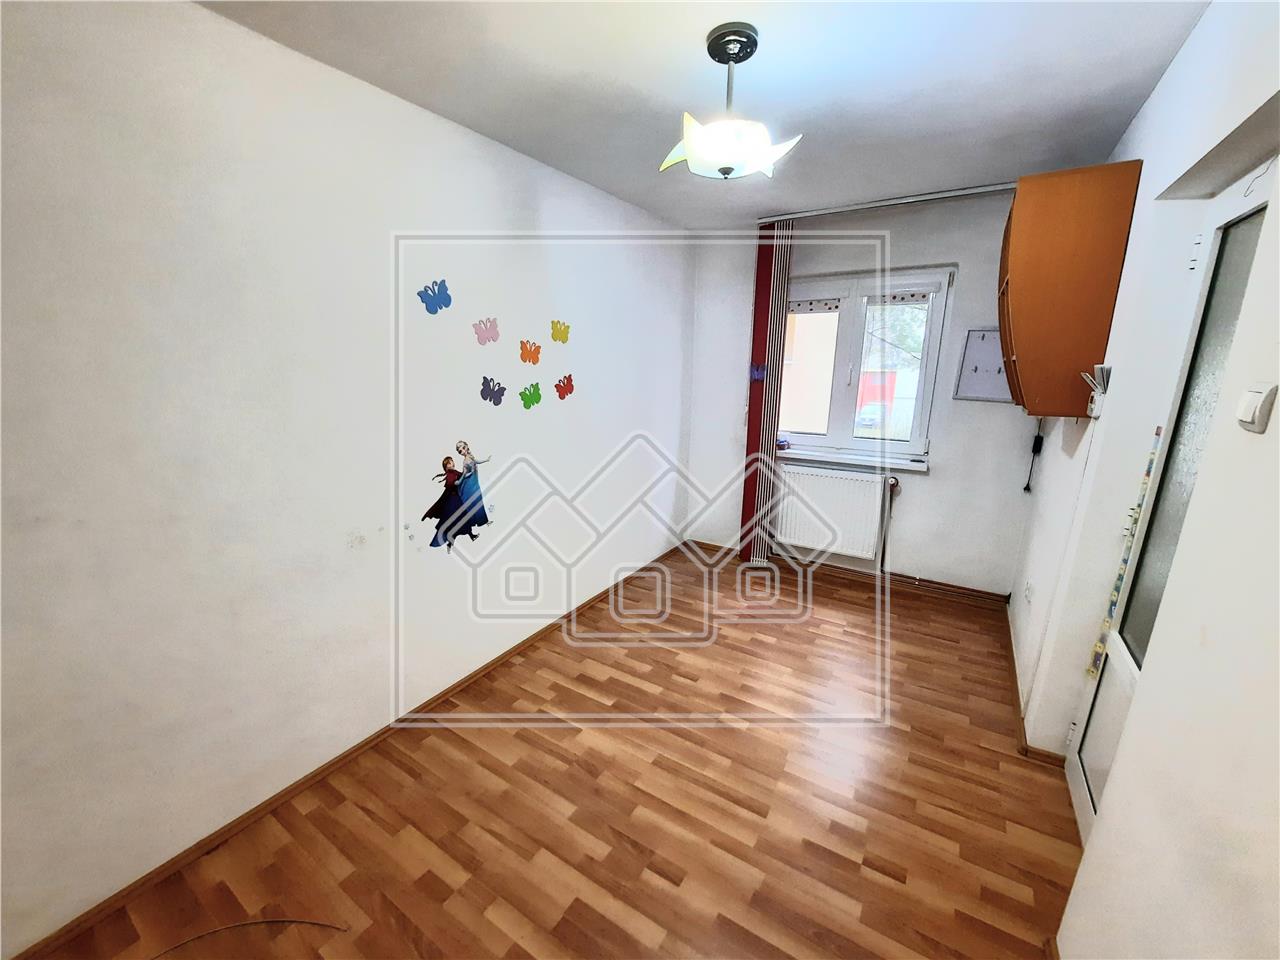 Wohnung zur Miete in Alba Iulia - 37 qm - 2 Zimmer - Cetate-Bereich